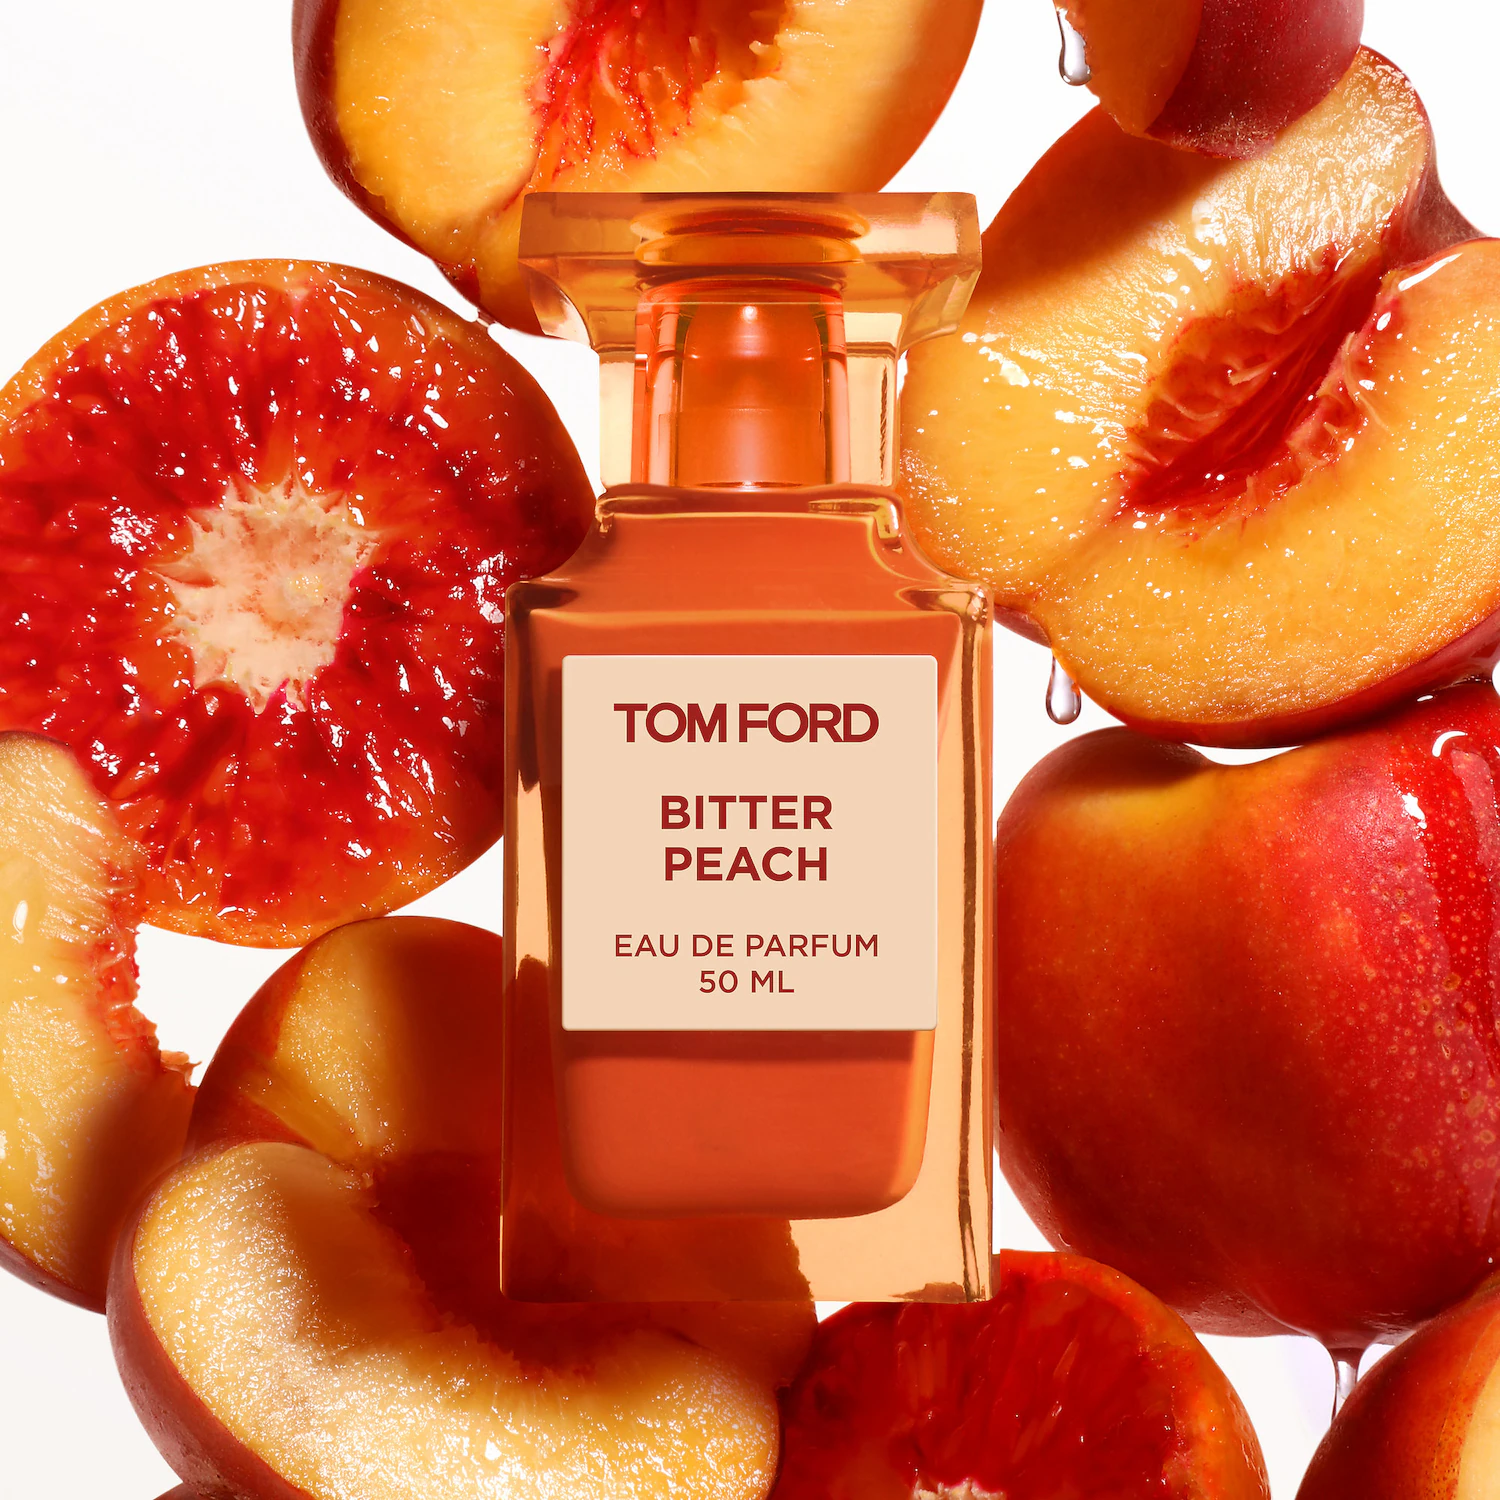 Tom Ford Bitter Peach Eau de Parfum (50mL)